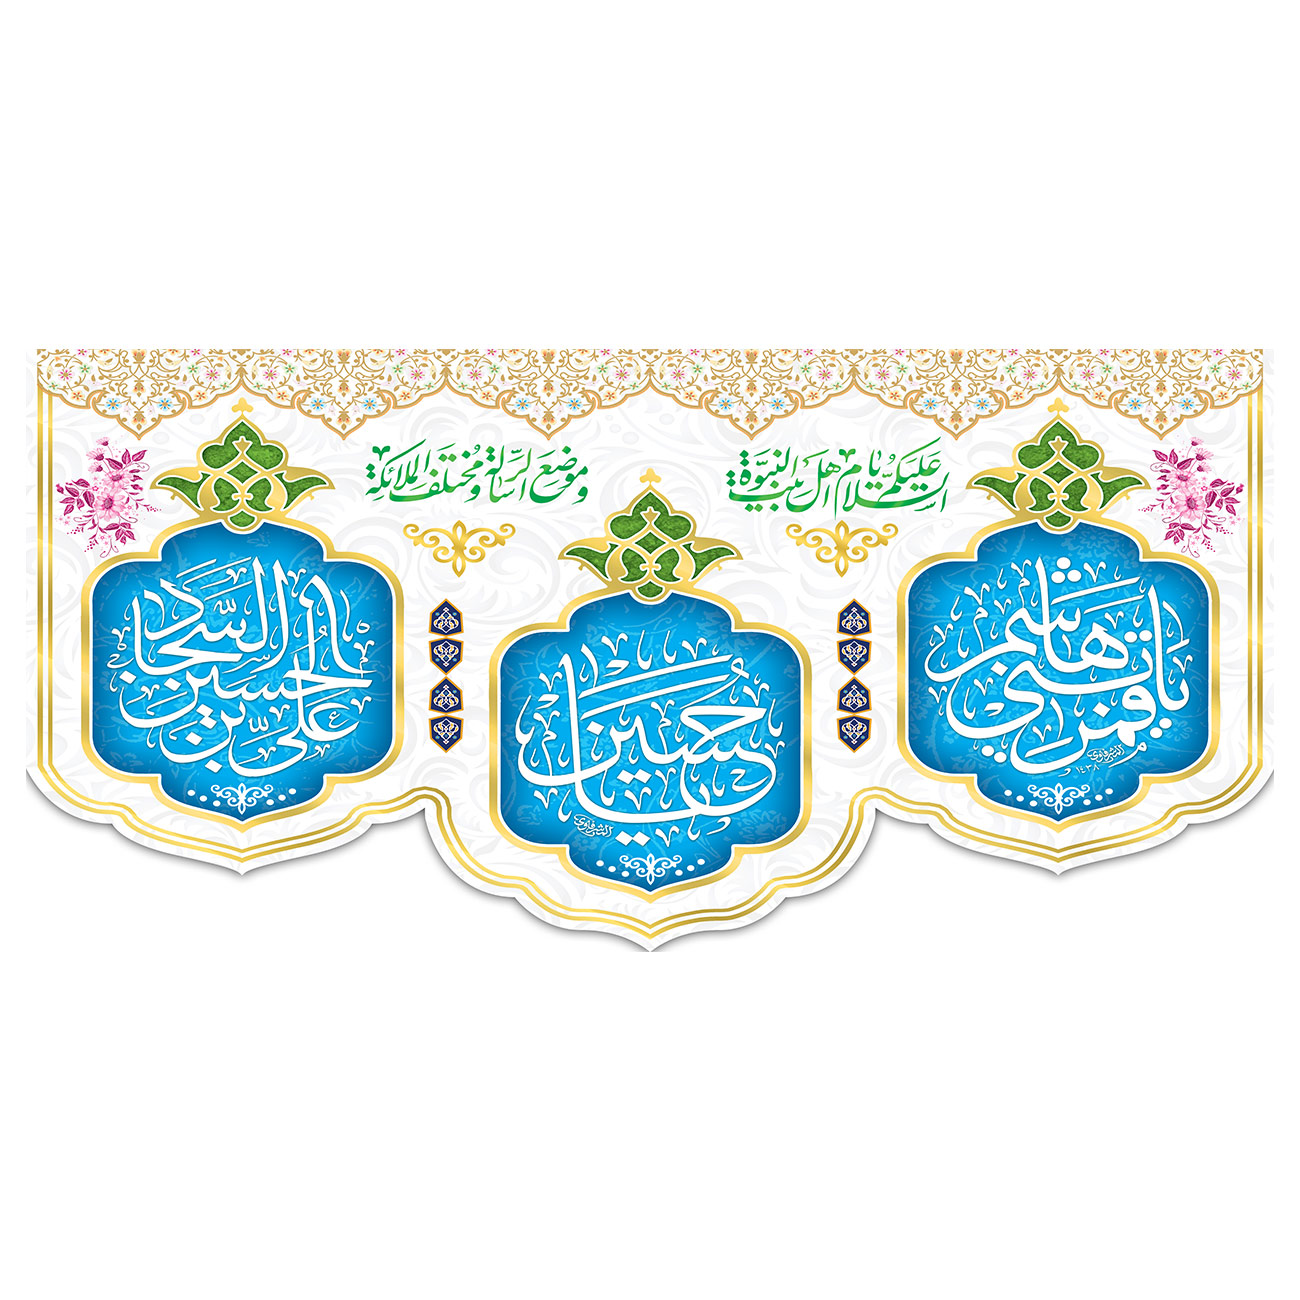  پرچم طرح نوشته مدل قمر بنی هاشم و امام حسین کد 282